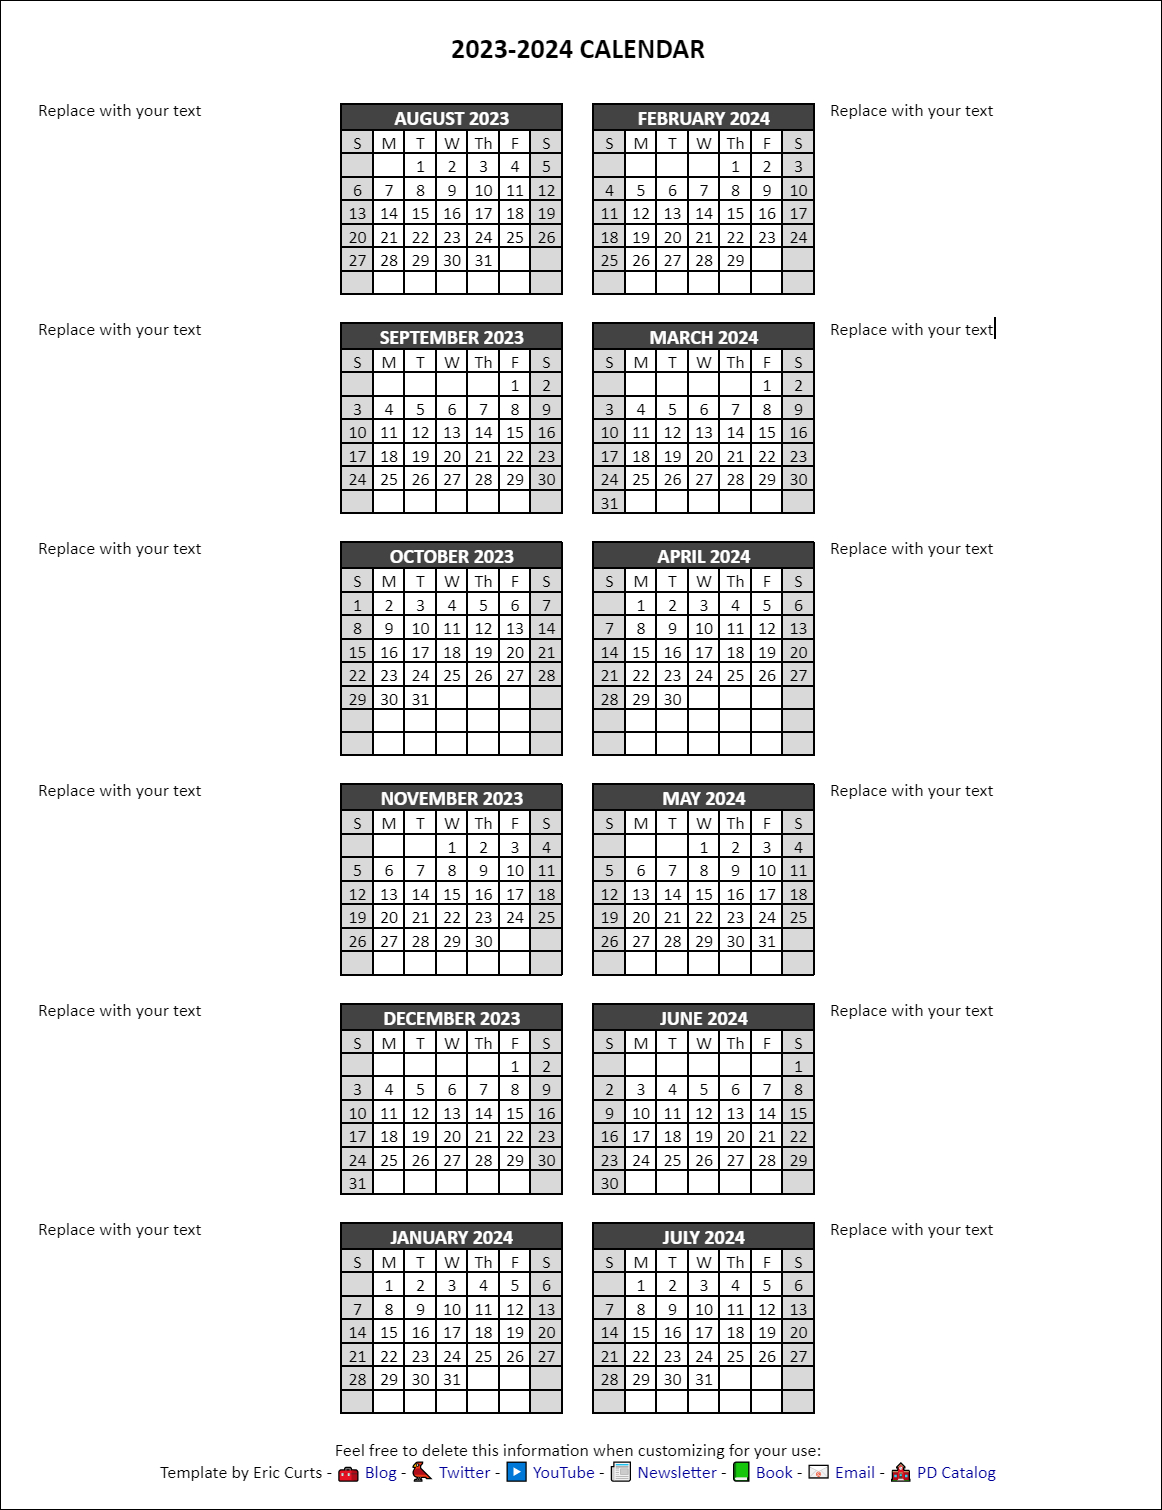 Control Alt Achieve: Google Docs Calendar Templates For The 2023 | 2024 Annual Calendar Google Sheets